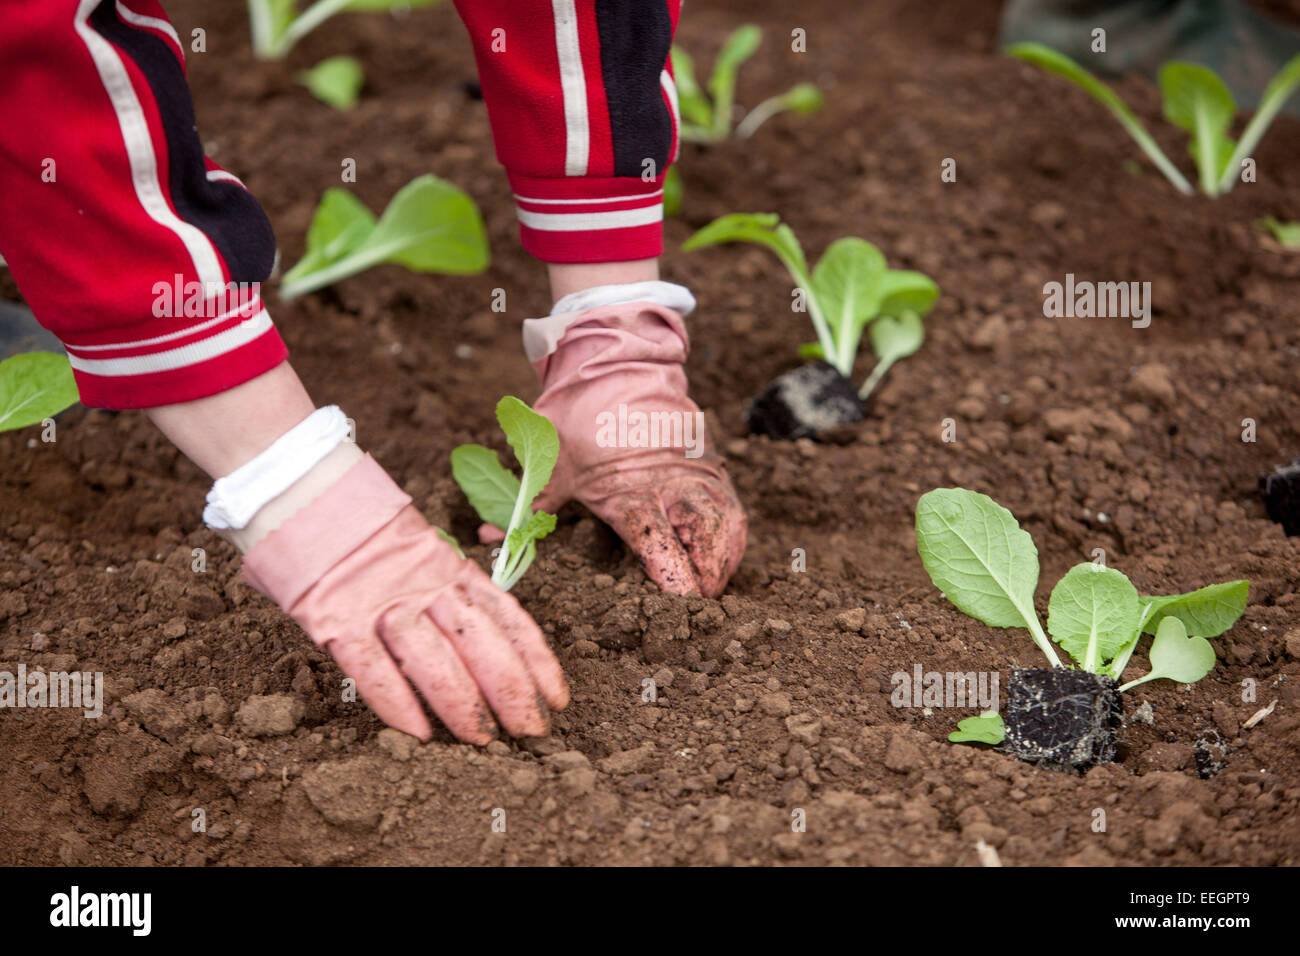 Femme jardinant des légumes dans le jardin potager de printemps plantant des plants de chou mains plantant, gants de travail de sol cultivant des légumes Banque D'Images